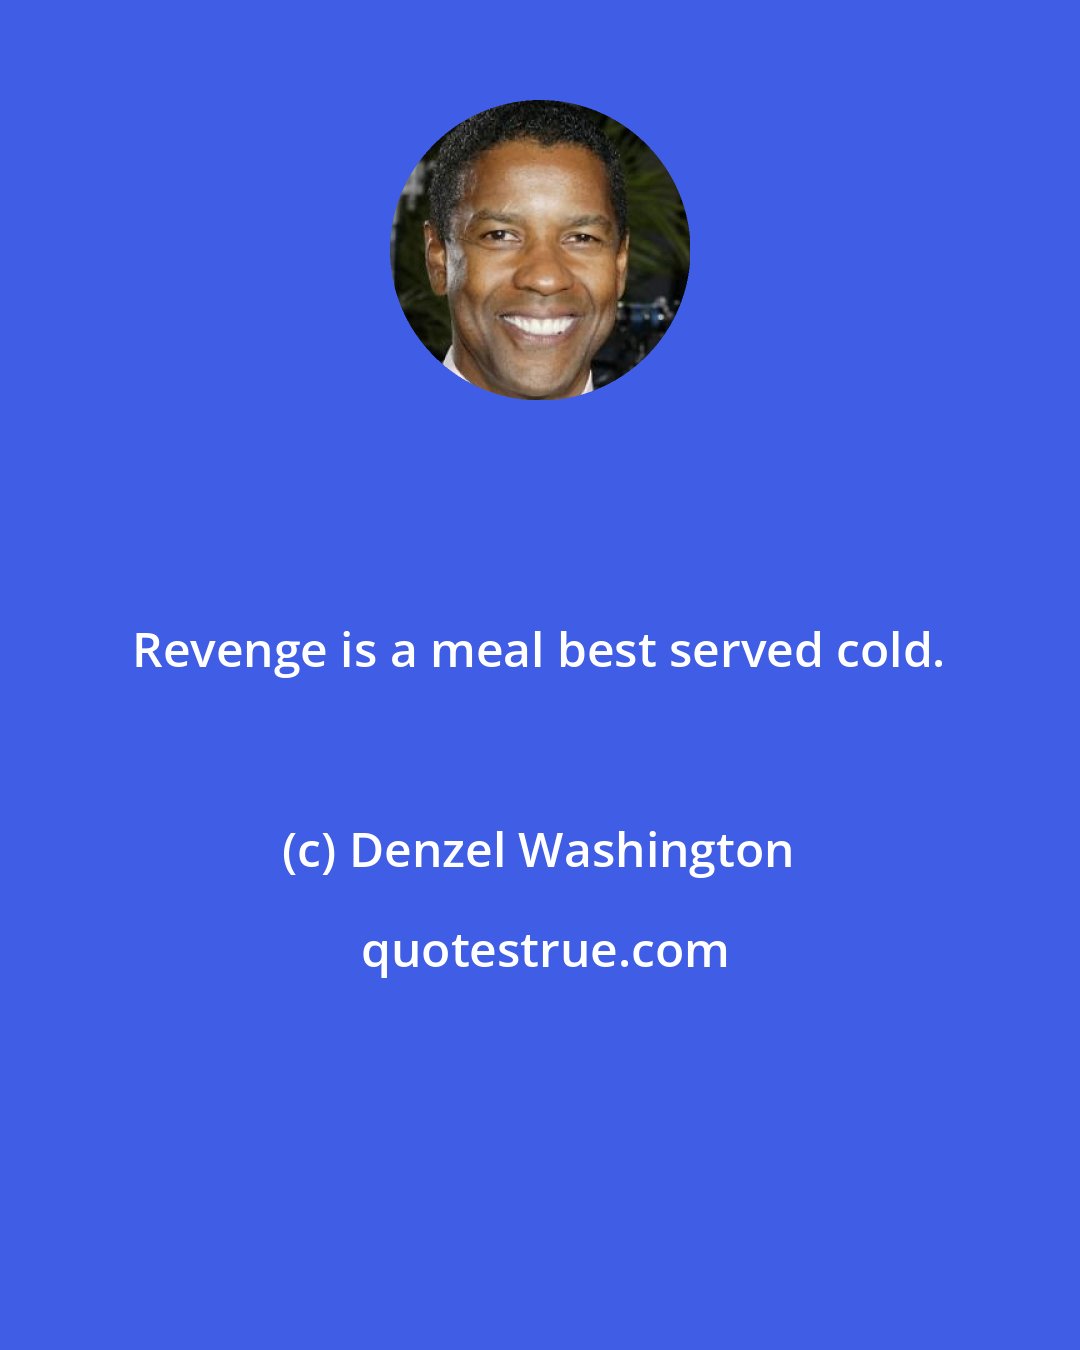 Denzel Washington: Revenge is a meal best served cold.